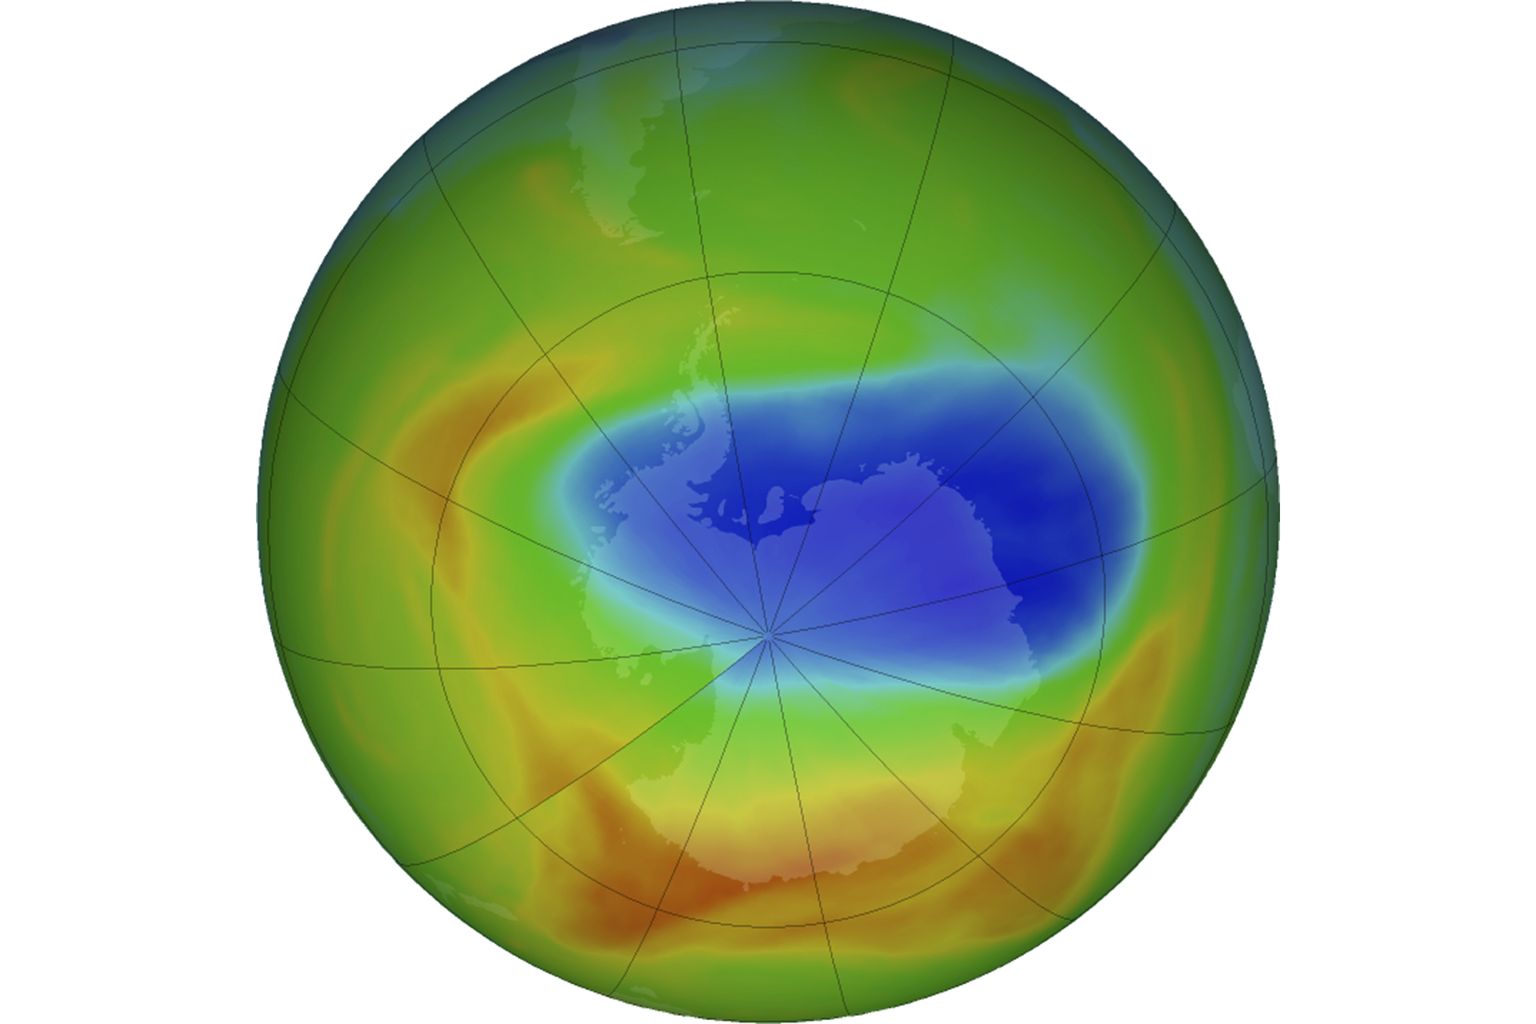 Изображение созданное NASA показывает озоновый слой над Антарктикой 20 октября 2019 года. Фиолетовые и синие цвета показывают зоны, где наблюдается наименьшее количество озона, то есть где слой тоньше всего, а желтые и красные цвета показывают, где он толще всего. Сейчас же ситуация кардинально изменилась.